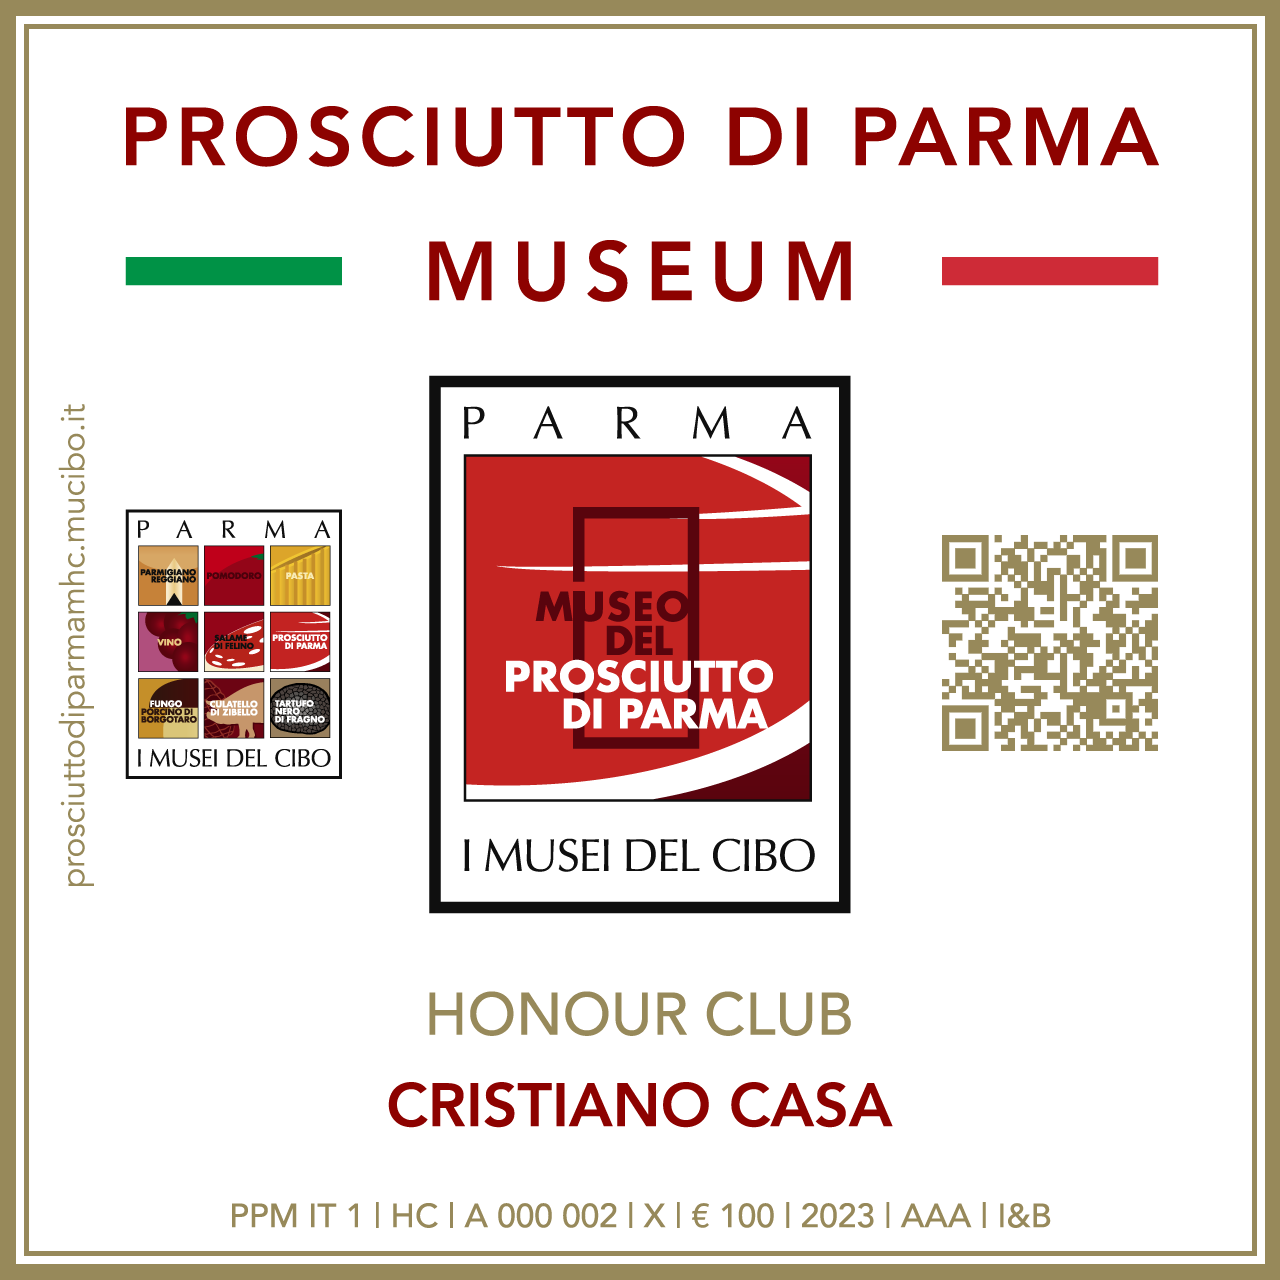 Prosciutto di Parma Museum Honour Club - Token Id A 000 002 - CRISTIANO CASA